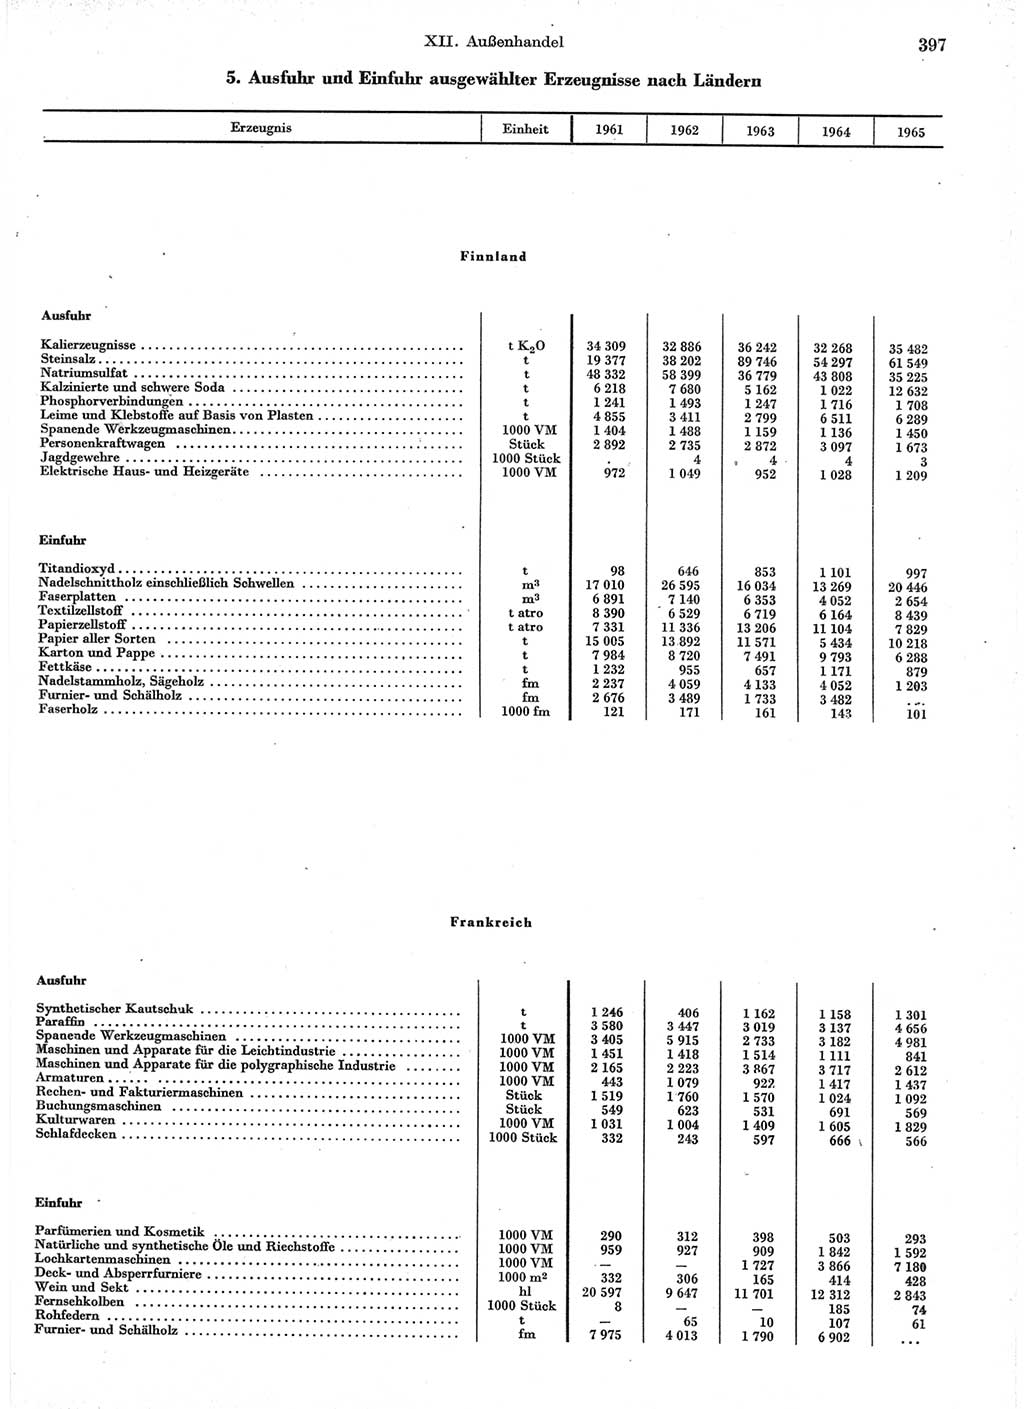 Statistisches Jahrbuch der Deutschen Demokratischen Republik (DDR) 1966, Seite 397 (Stat. Jb. DDR 1966, S. 397)